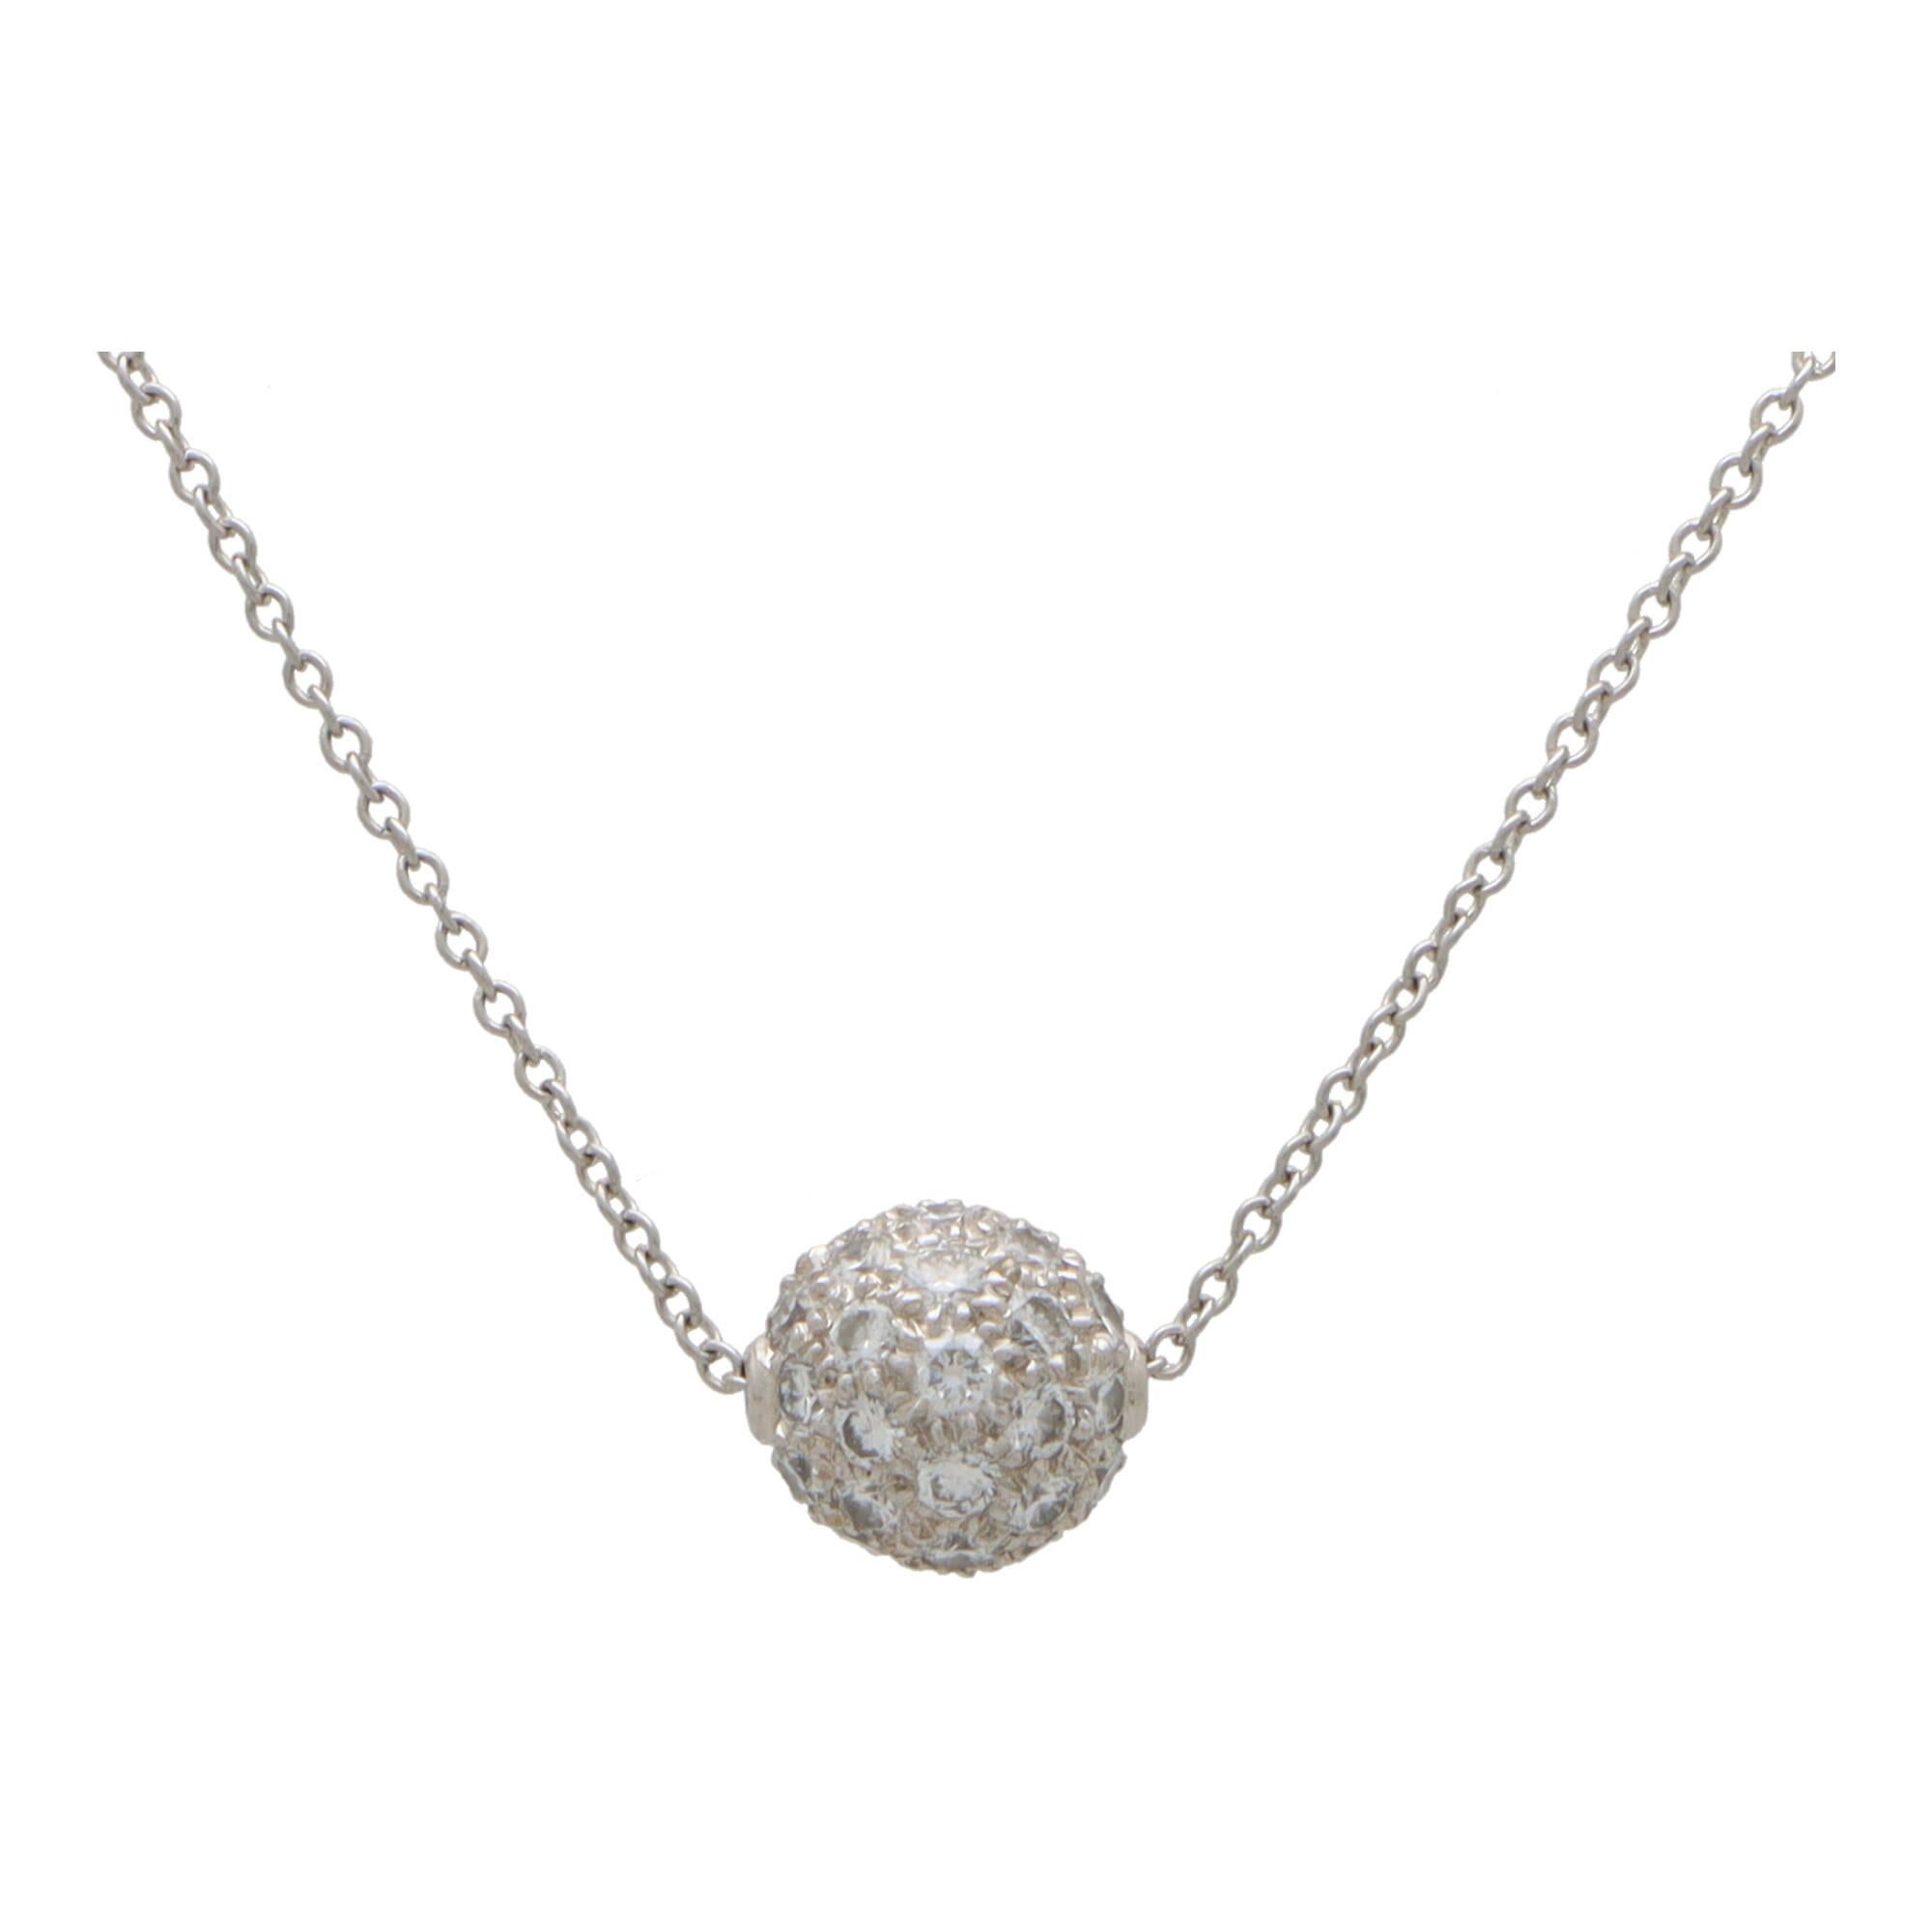 Eine schöne Vintage Tiffany & Co. Diamant Kugel Halskette in Platin gesetzt. 

Der Anhänger besteht aus einer massiven Platinkugel, die vollständig mit 42 runden Diamanten im Brillantschliff ausgefasst ist. Die Kugel hängt an einer 16 Zoll langen